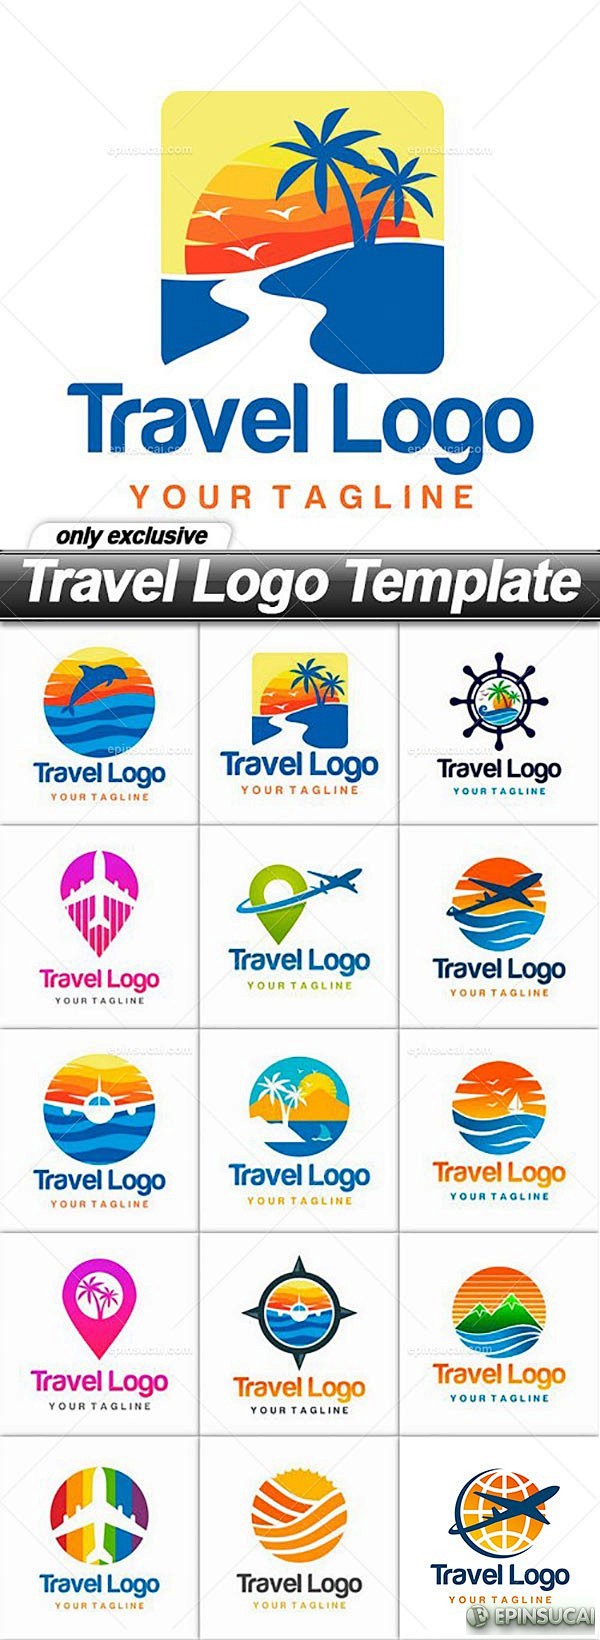 【新提醒】旅游标志设计LOGO矢量素材合...